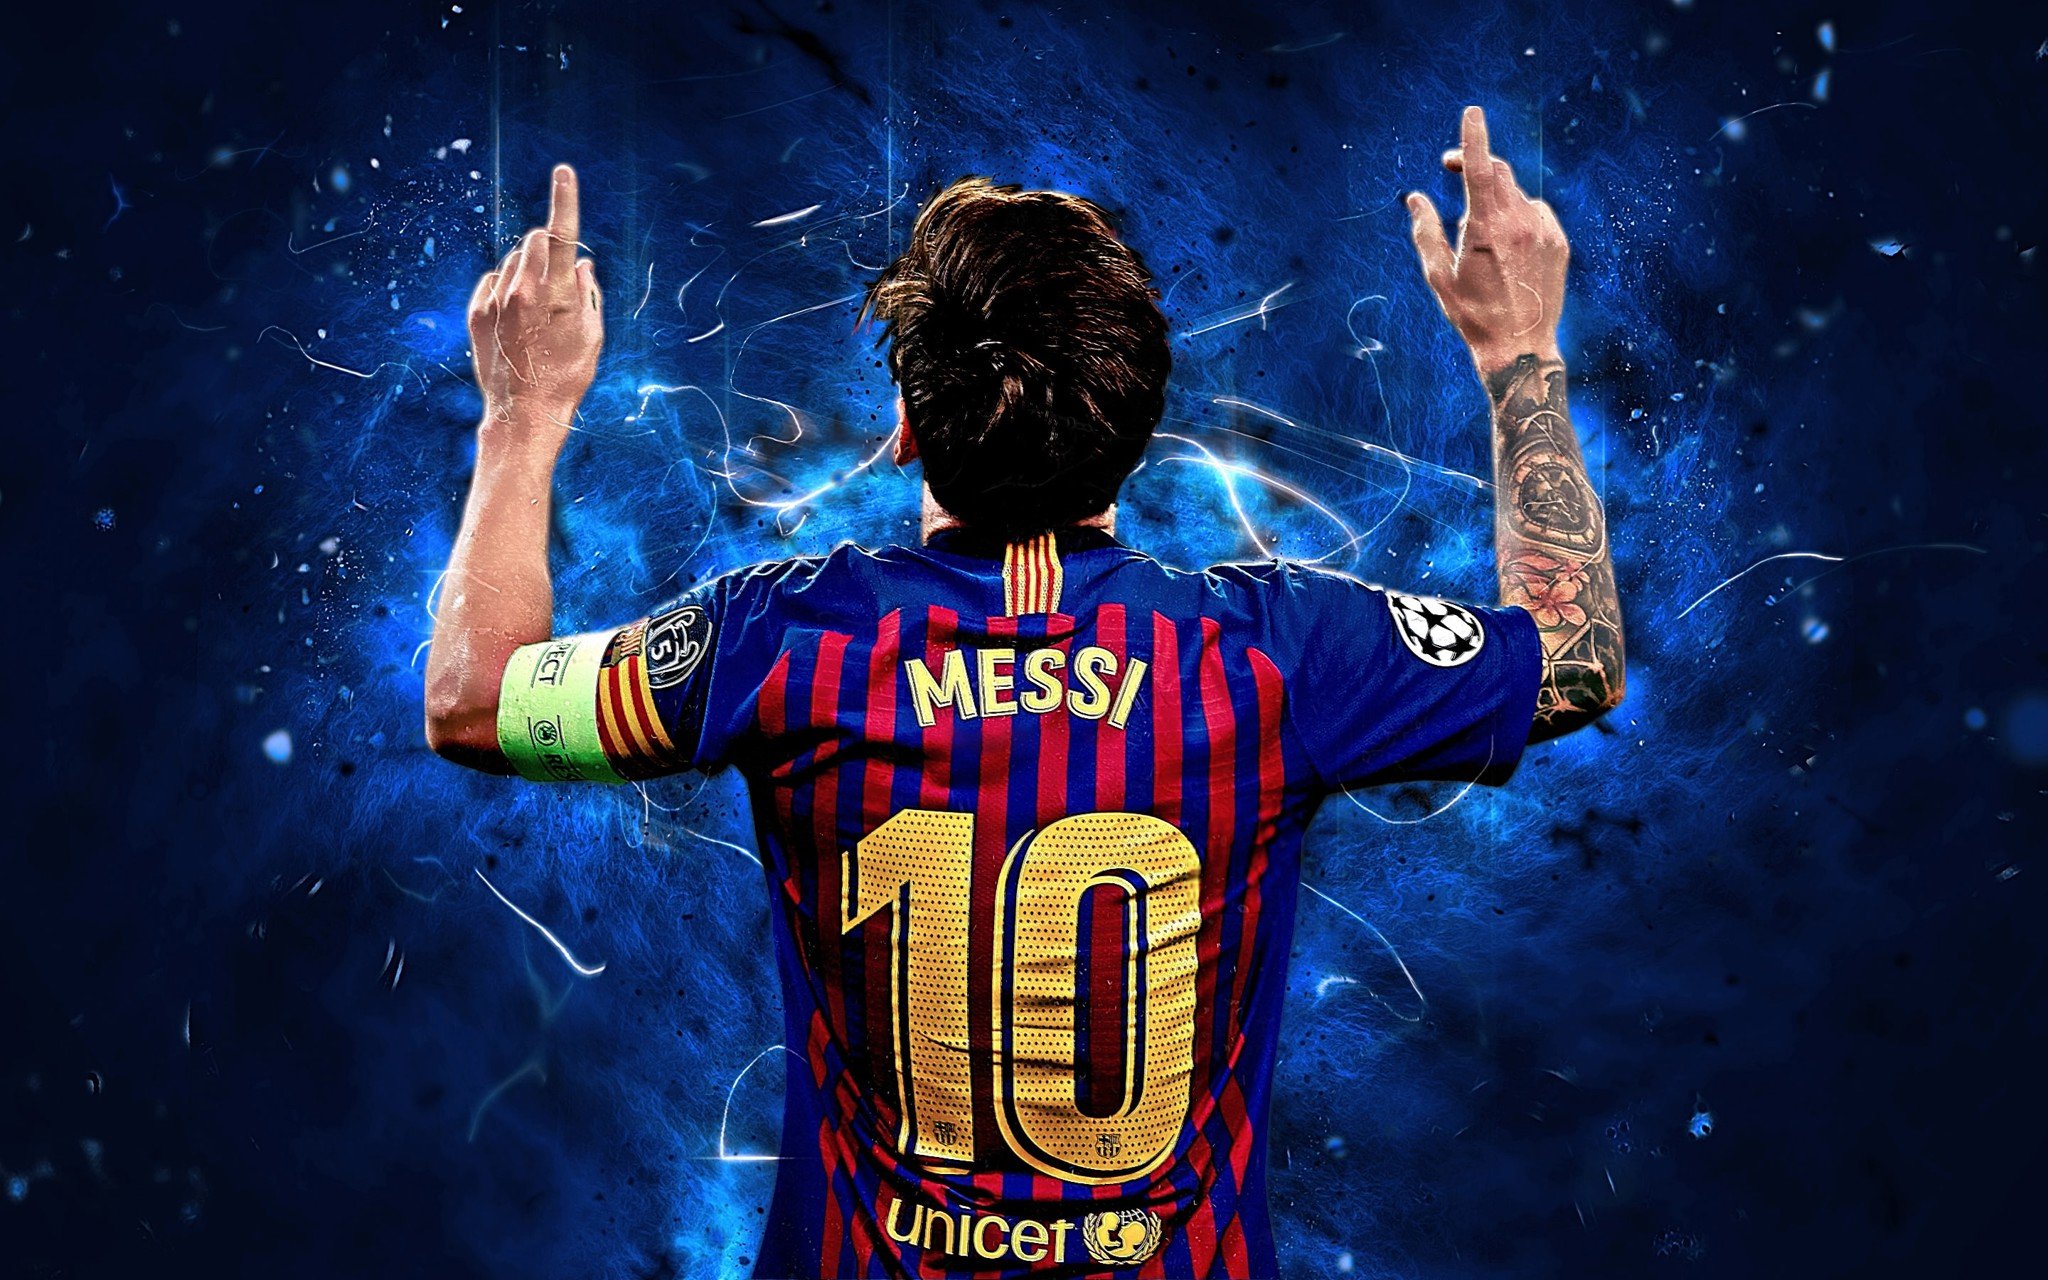 Sở hữu ngay hình nền Messi 3D tuyệt đẹp cho thiết bị của bạn! Với cách thiết kế ấn tượng và độ phân giải tuyệt vời, bạn sẽ mãn nhãn khi ngắm nhìn ngôi sao bóng đá huyền thoại này trên màn hình.